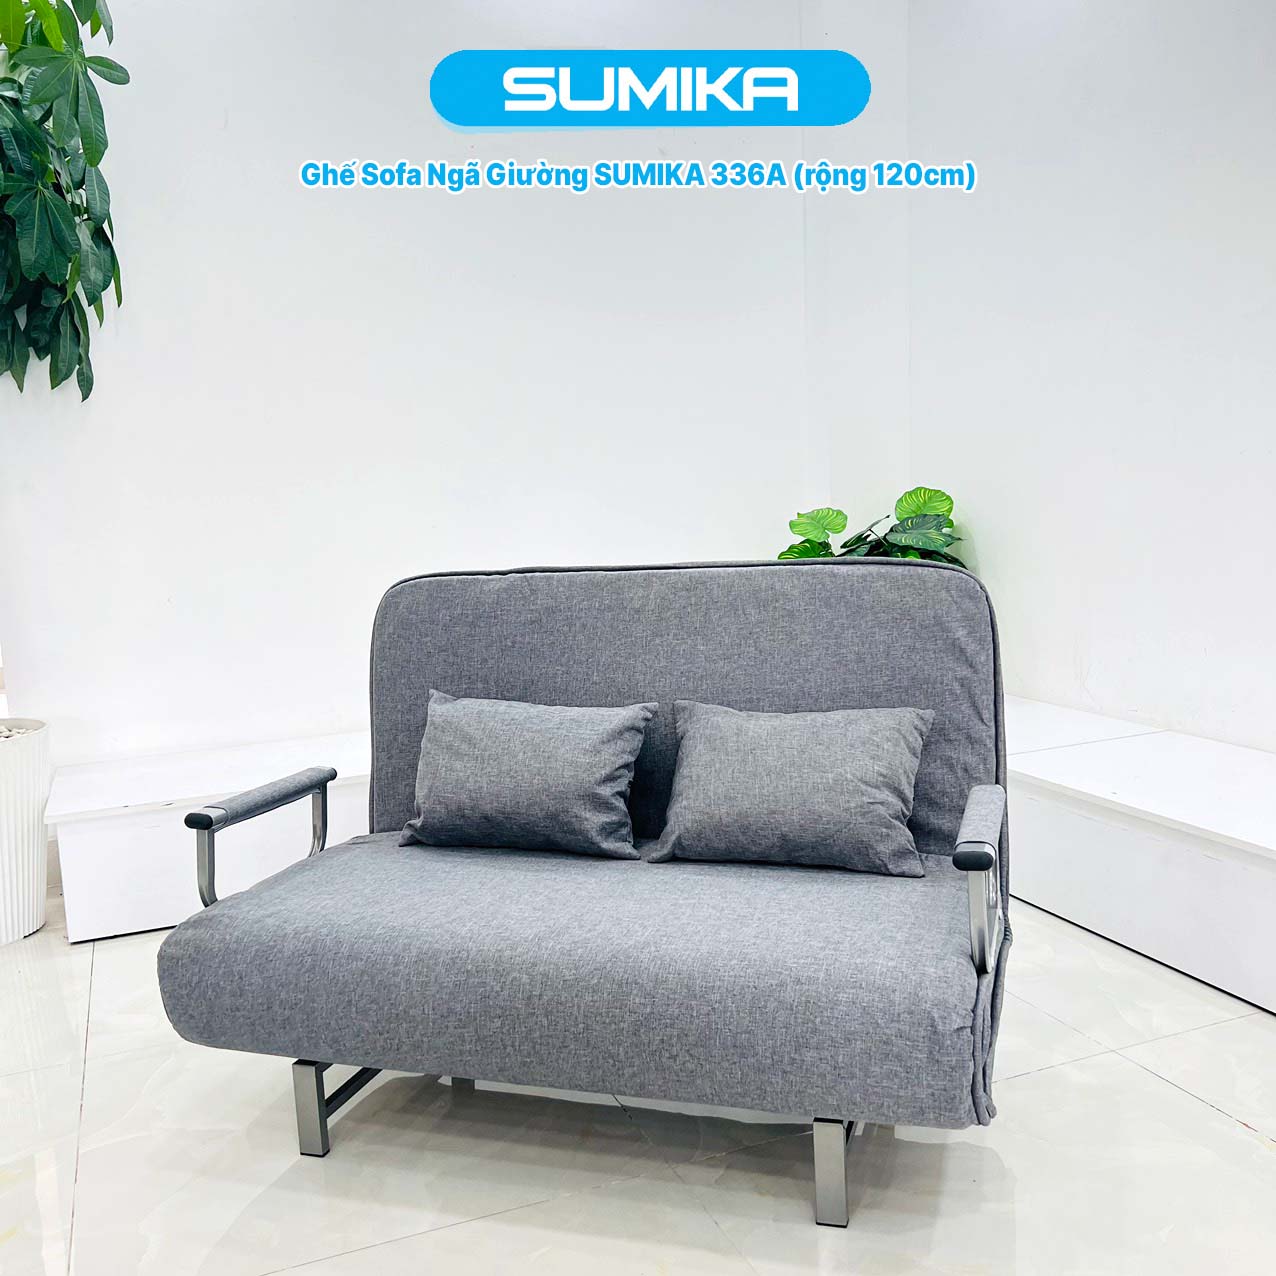 Ghế Sofa giường thông minh gấp gọn SUMIKA 336A, rộng 120cm